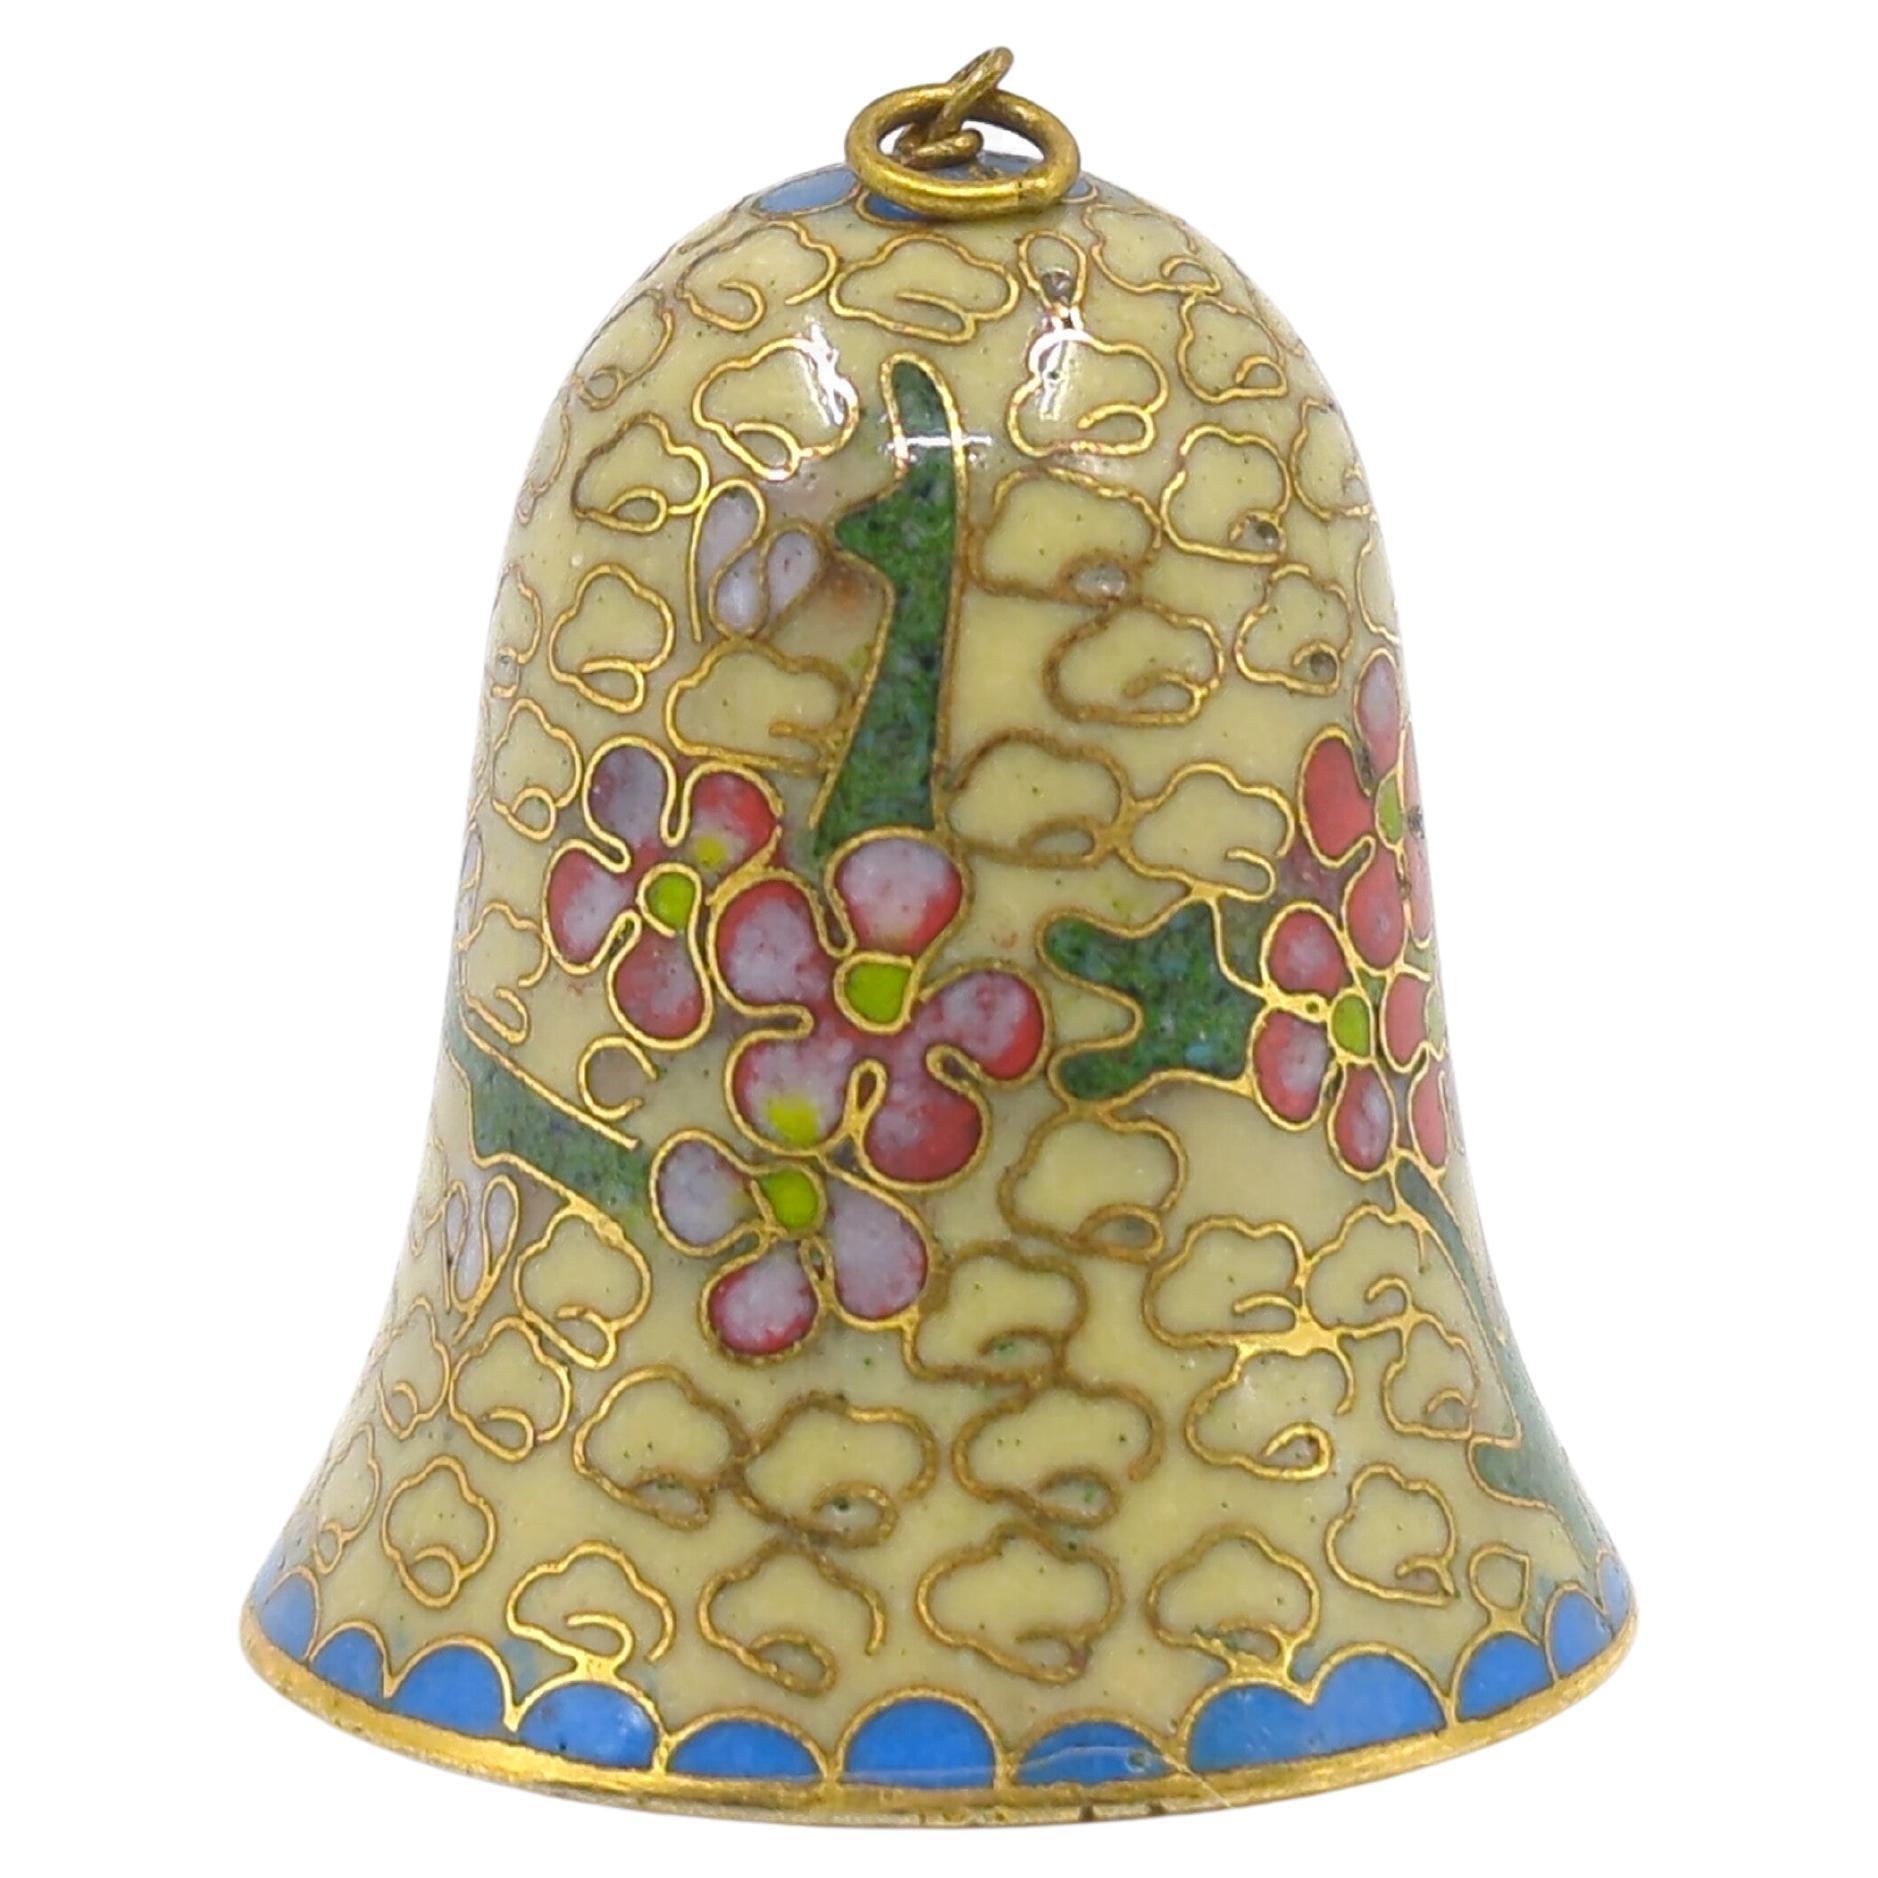 Antike chinesische Glocke aus Cloisonne-Emaille, mit vergoldeten Details und einem Jade-Schläger

Diese wunderbare kleine Glocke gibt einen charmanten Ton von sich und ist ein schönes Geschenk für einen geschätzten Menschen oder ein Haustier in